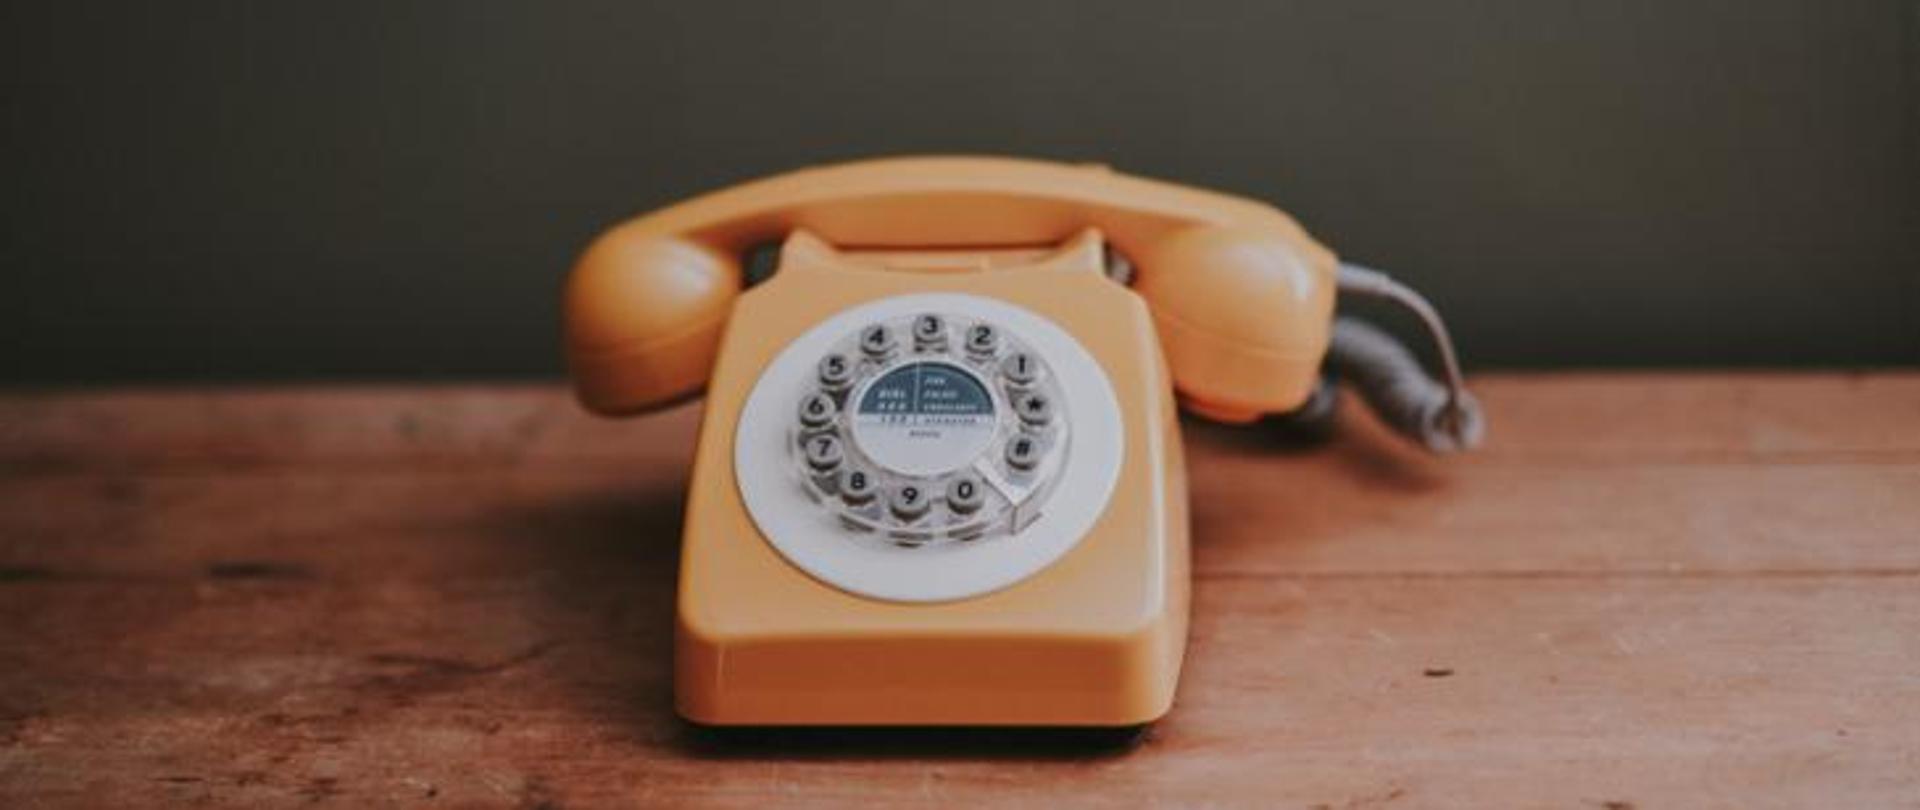 Zdjęcie telefonu starego typu w kolorze żółtym na drewnianym blacie.